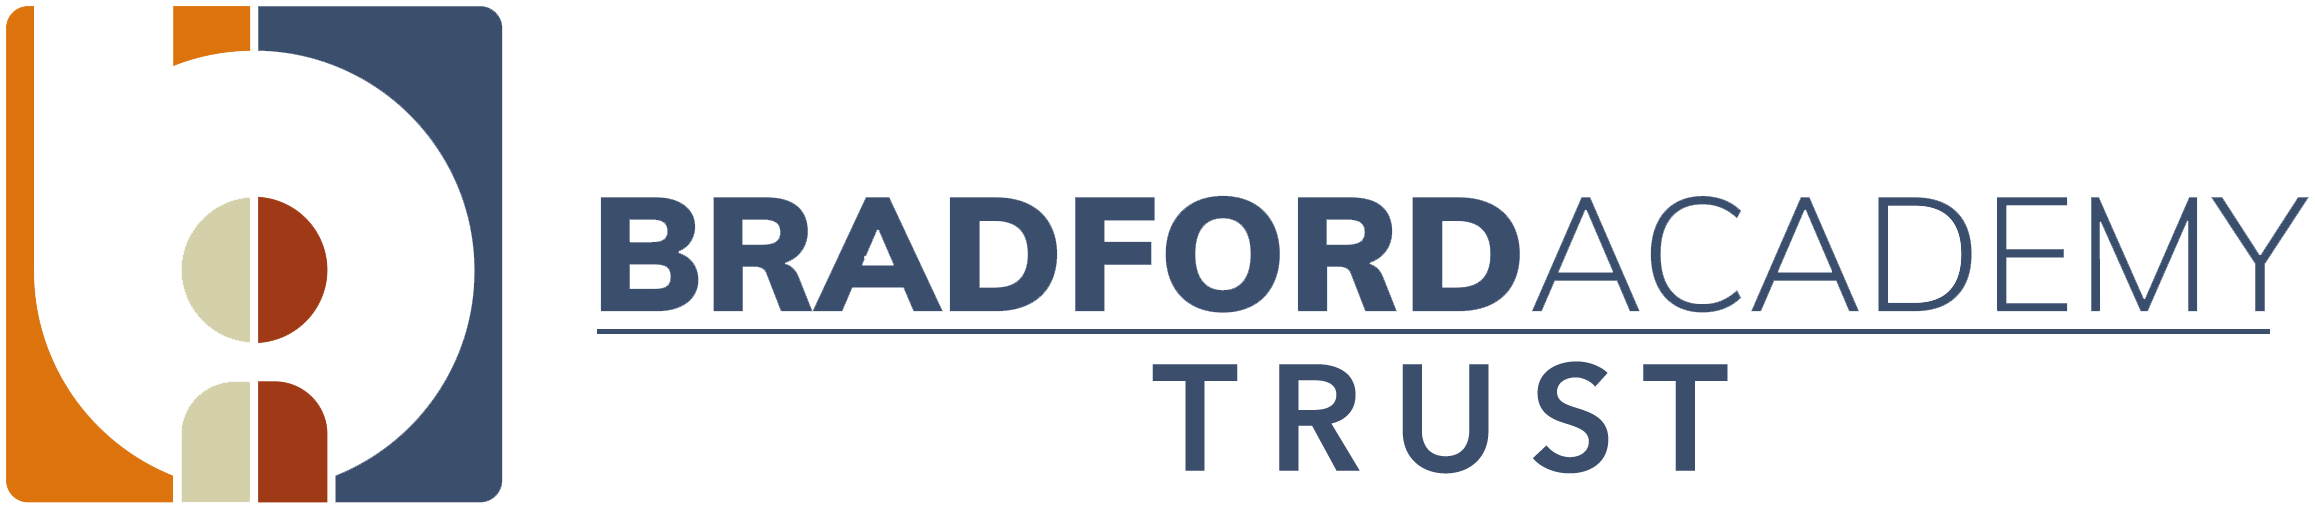 Bradford Academy logo